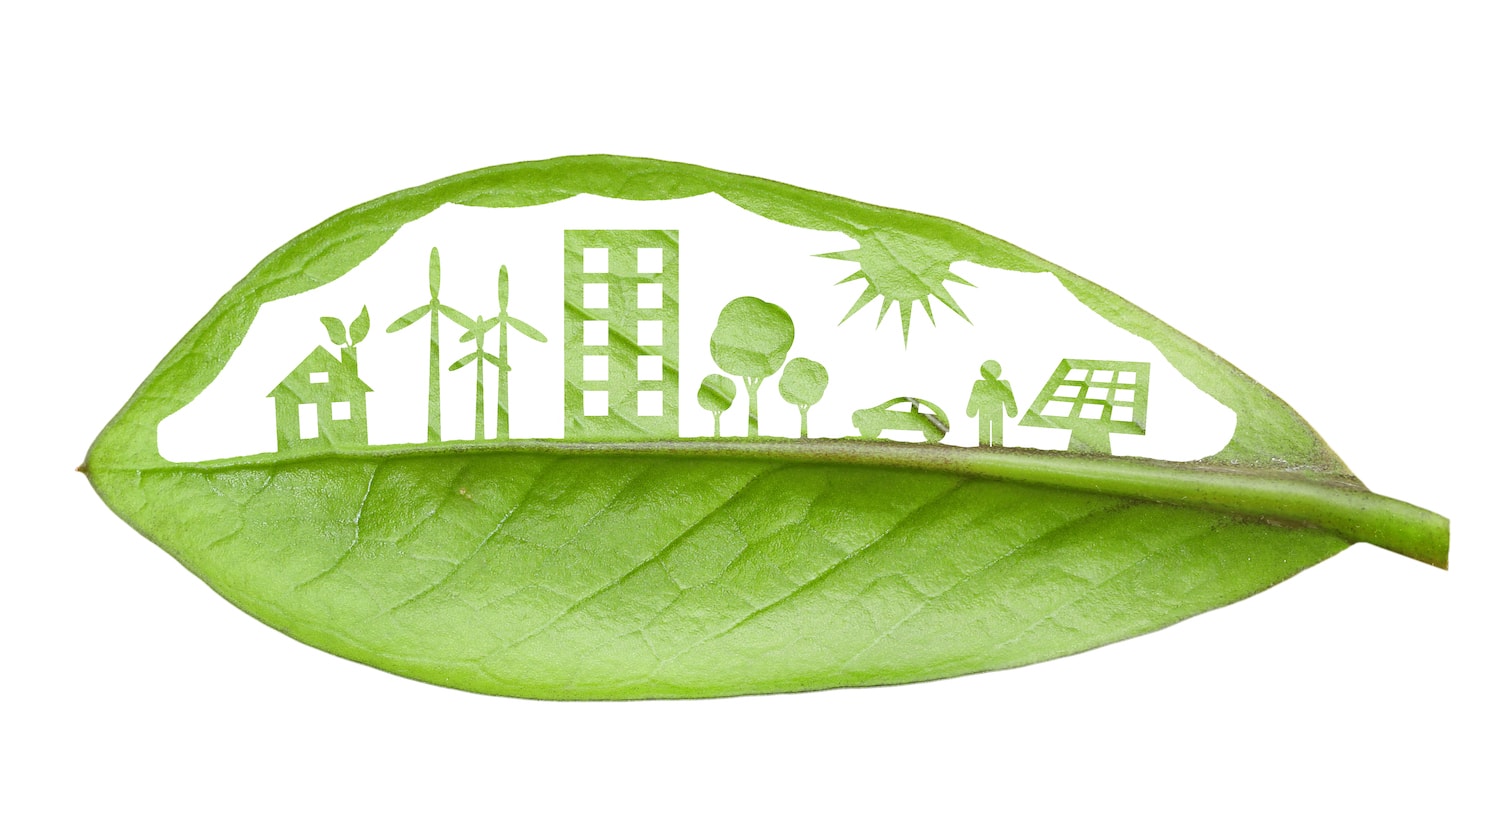 Rendicontazione e sostenibilità ambientale: il futuro delle aziende responsabili